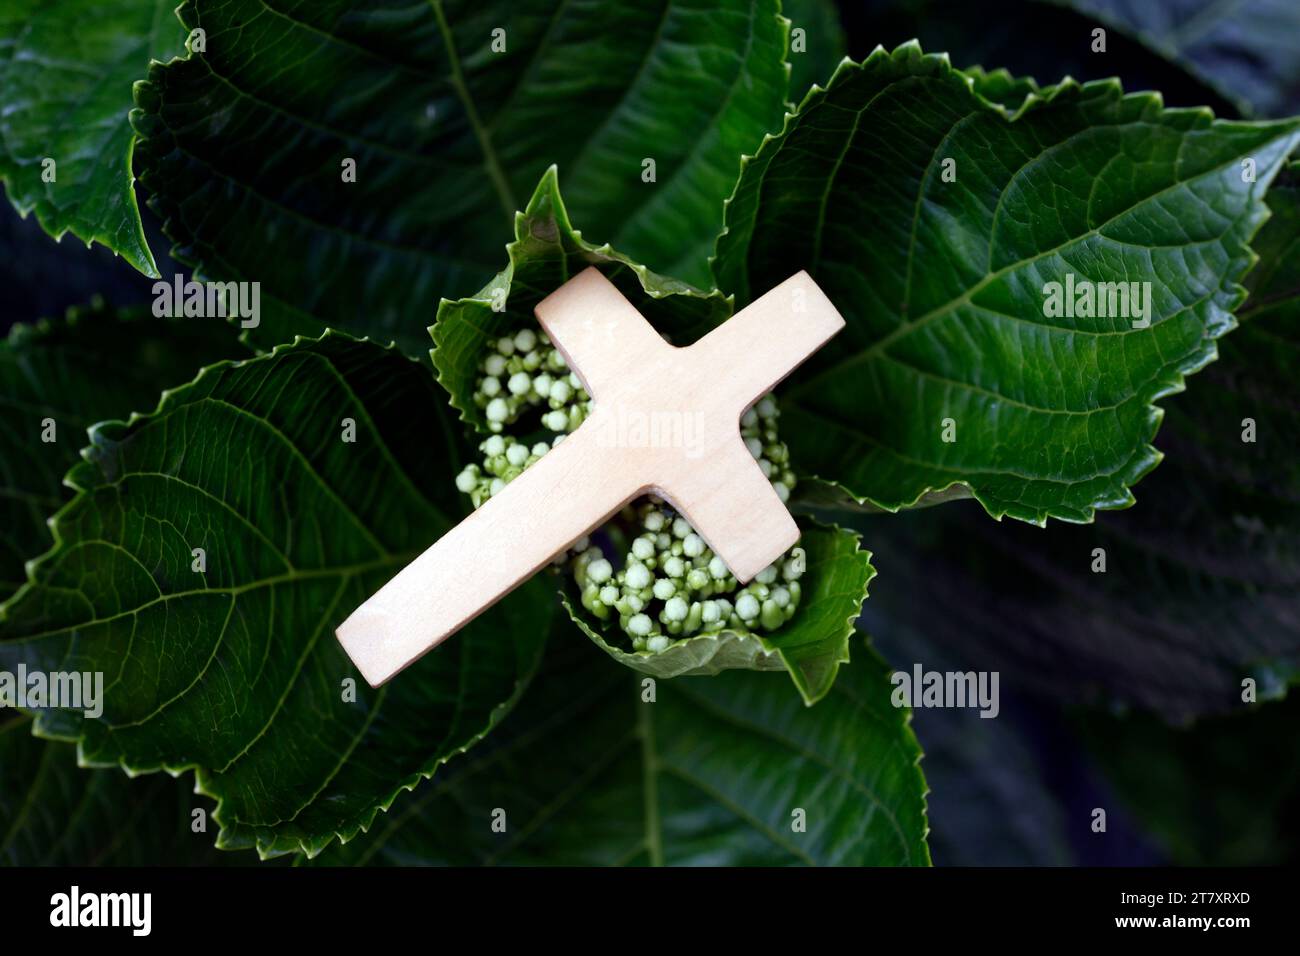 Religiöses Symbol des Gebets in der Natur, christliches Kreuz auf grünen Blättern, Vietnam, Indochina, Südostasien, Asien Stockfoto